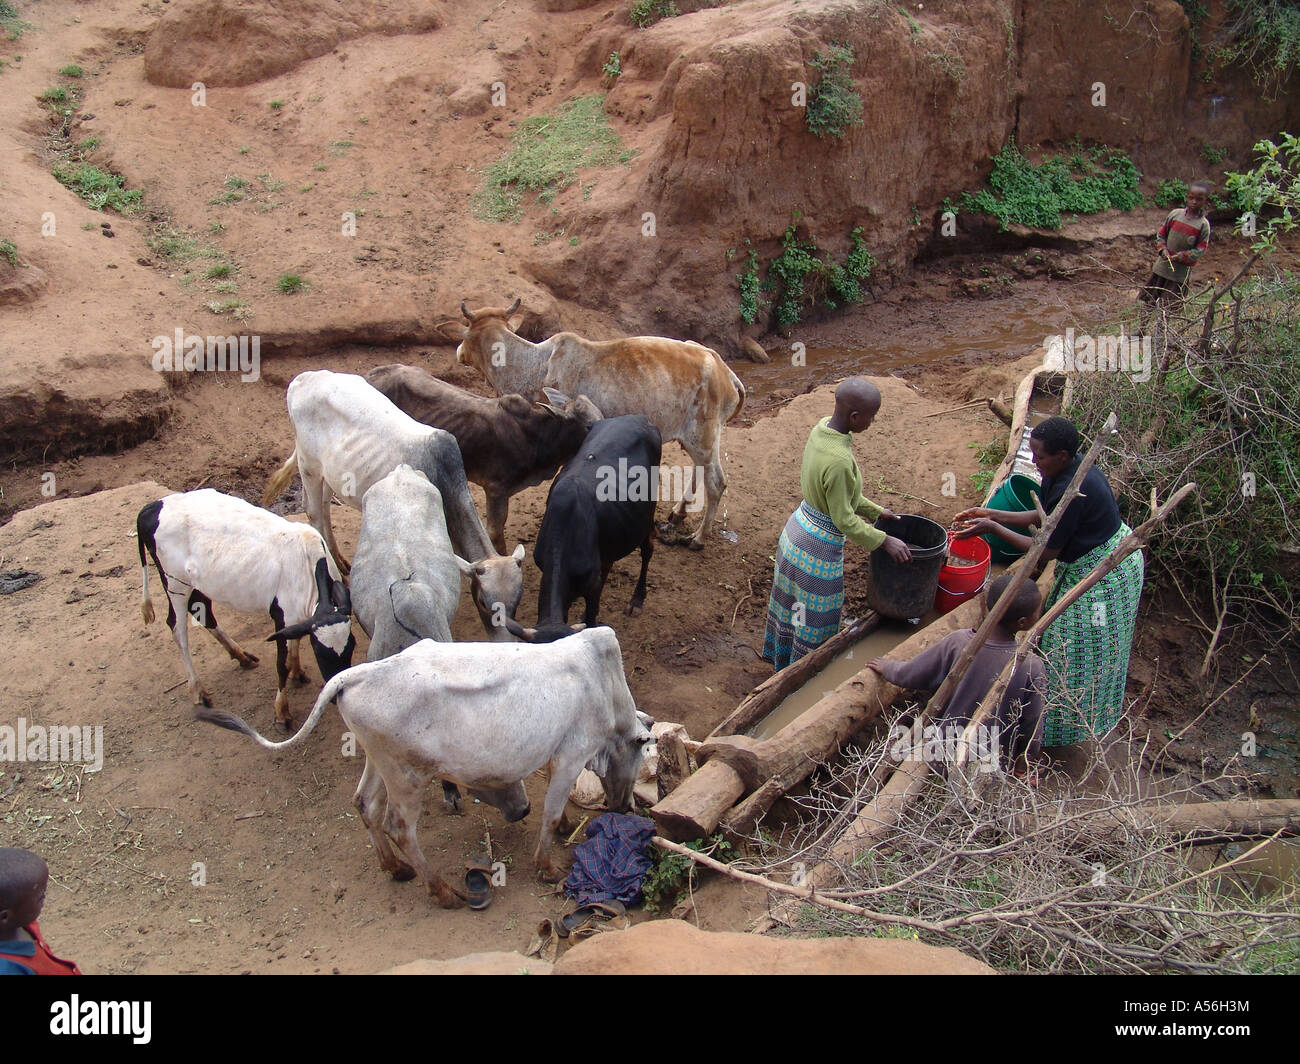 Iy8556 bovins Painet Tanzanie l'eau potable par kansay trou seau sera ngorongoro jusqu'à milles familles maisons de façon Banque D'Images